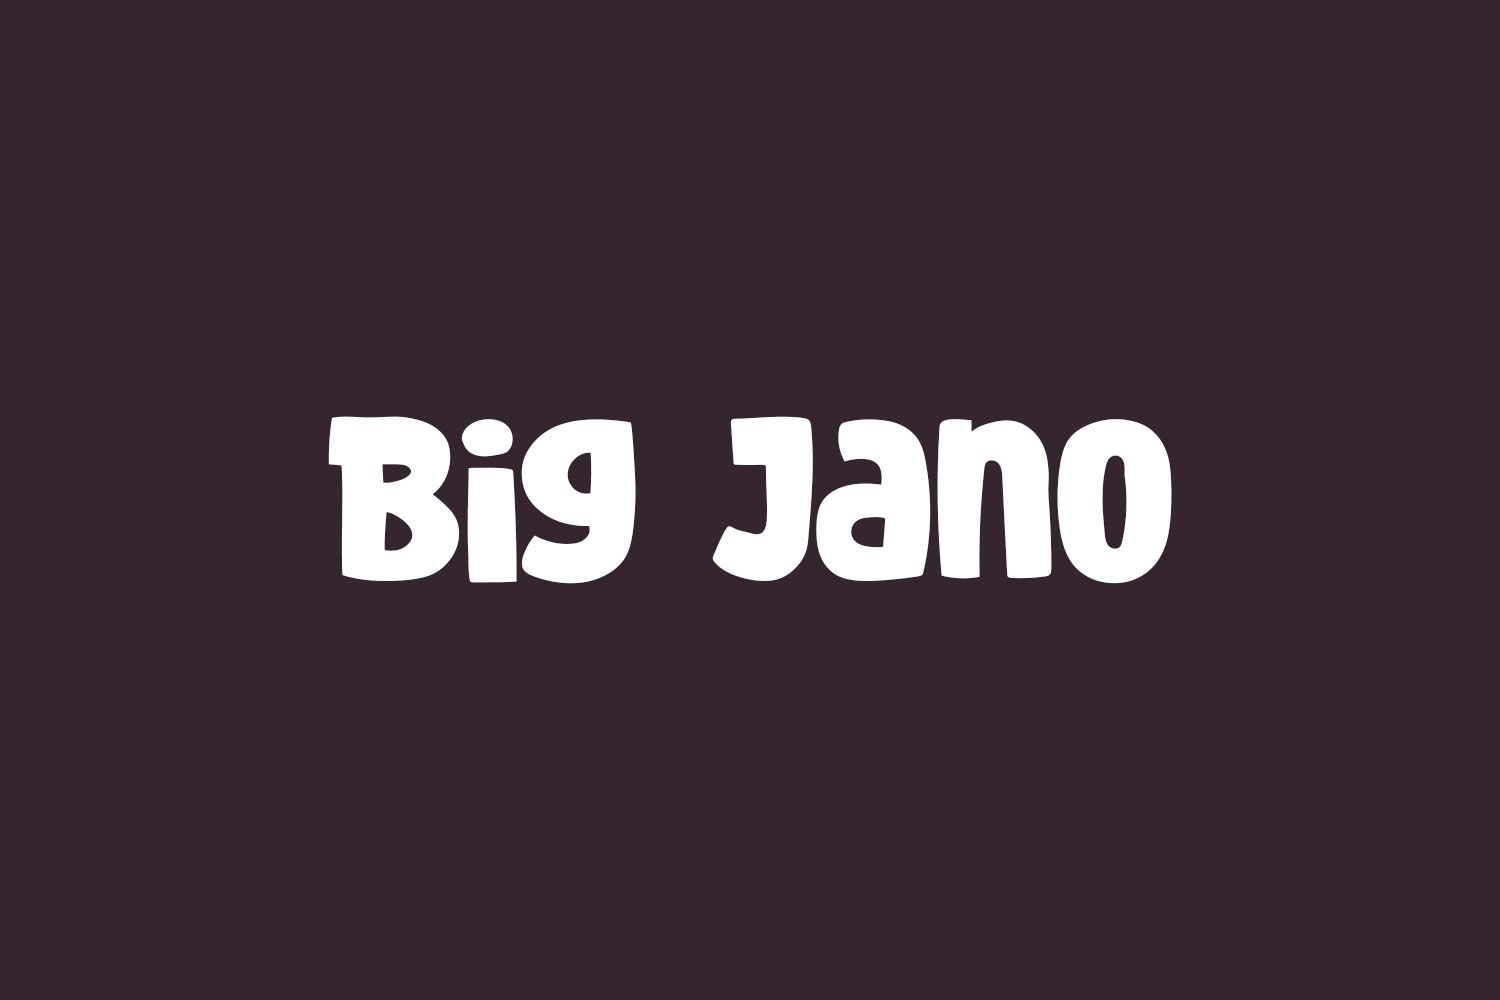 Big Jano Free Font